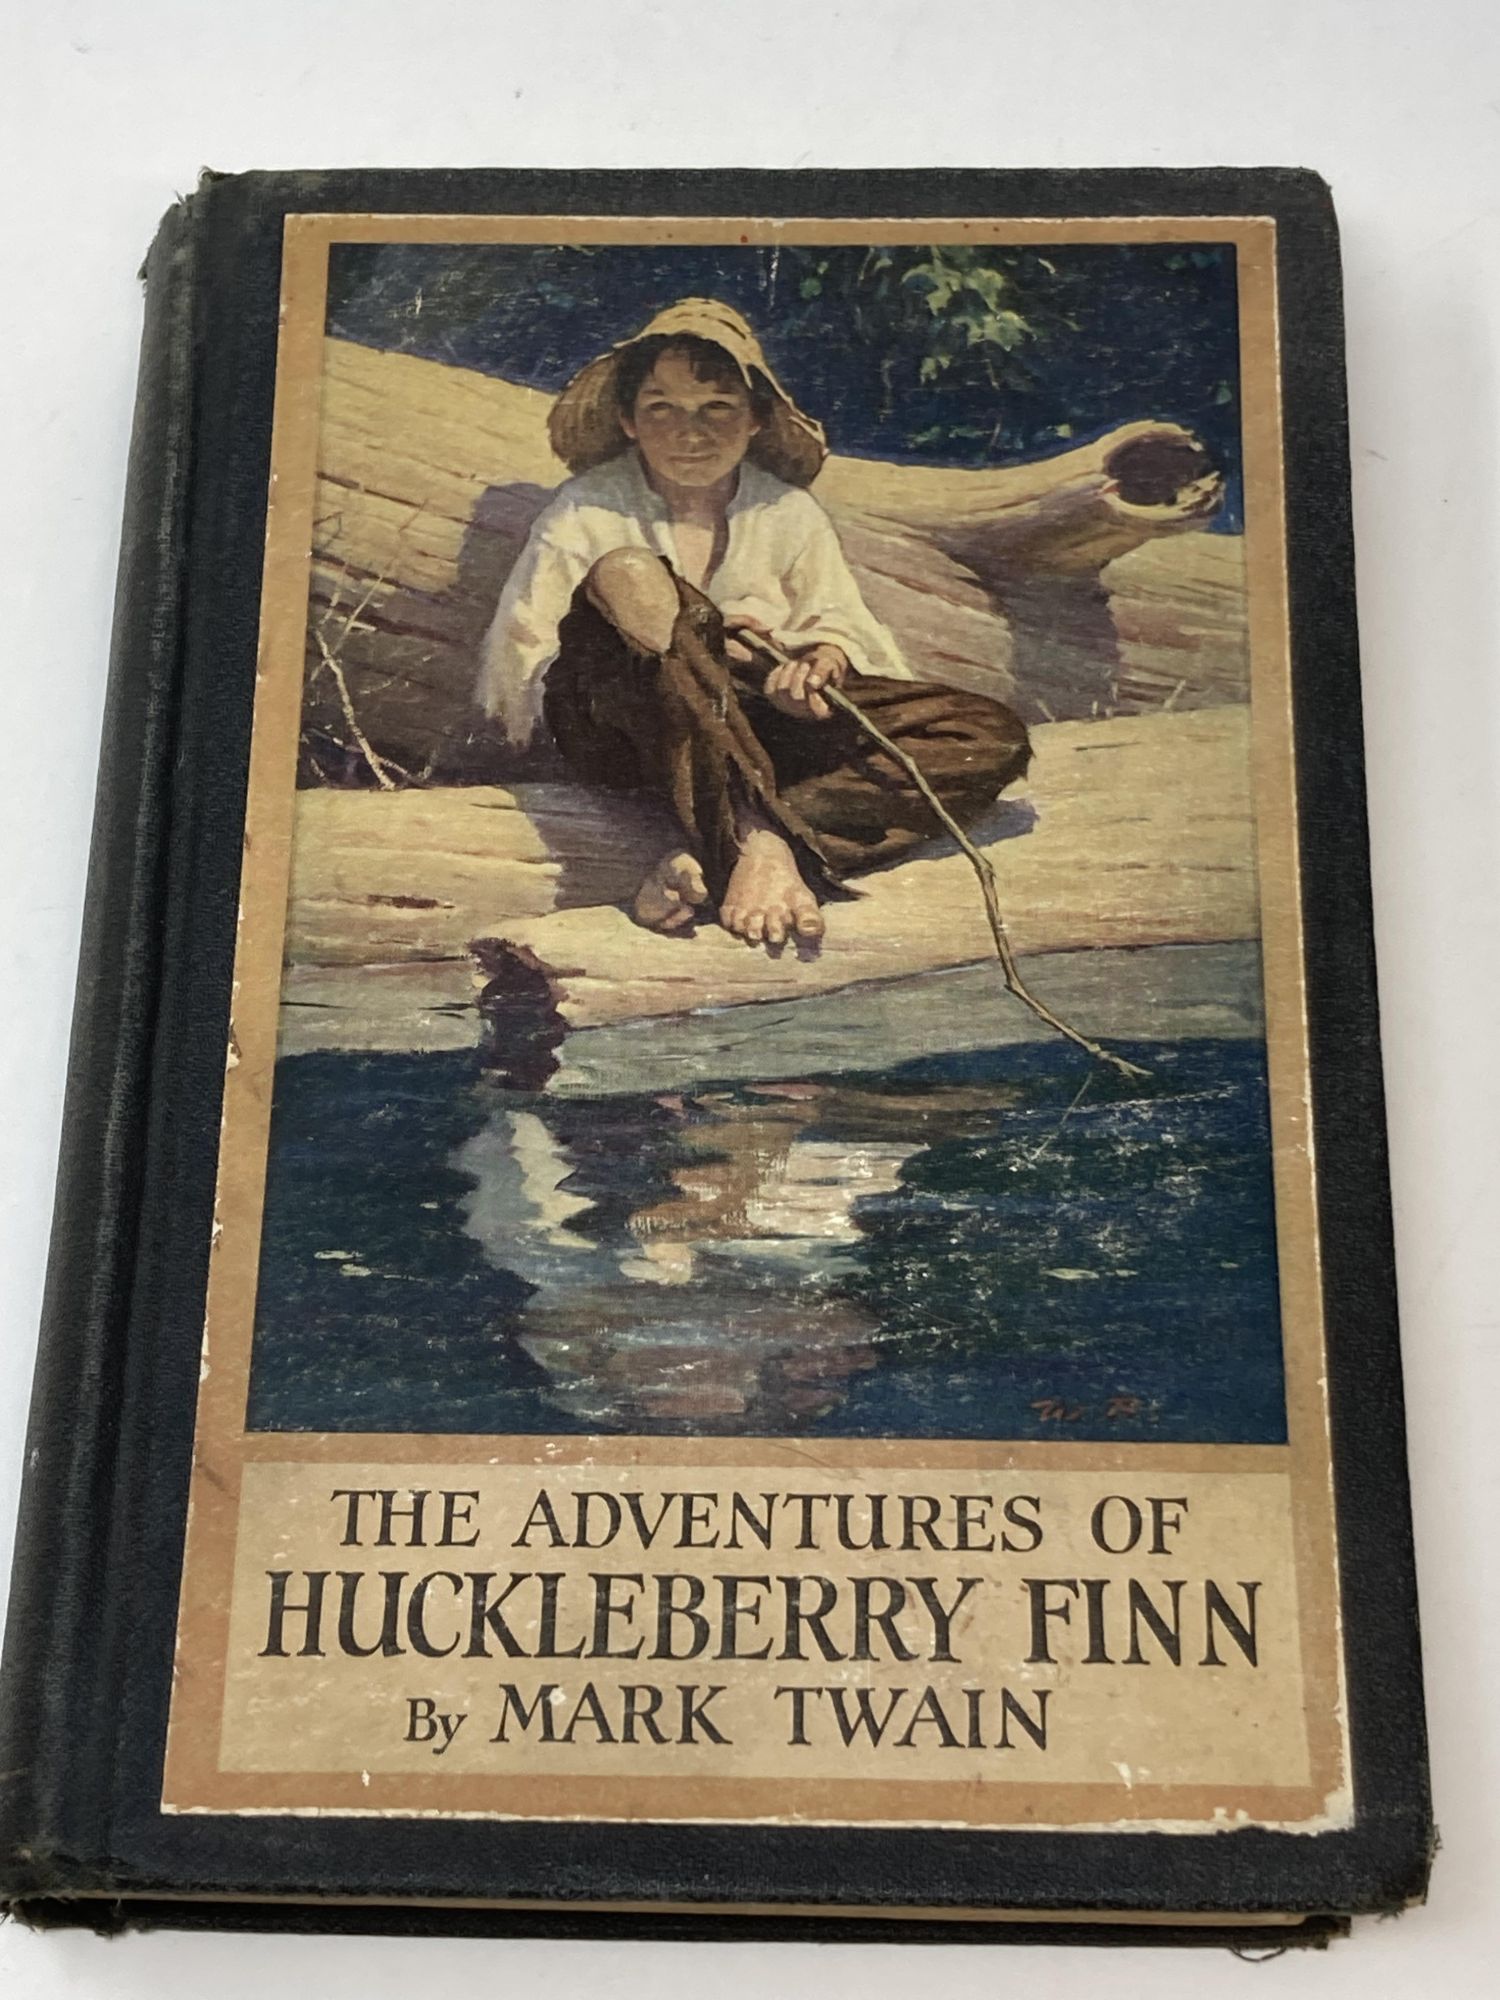 Twain, Mark - The Adventures of Huckleberry Finn (Tom Sawyer's Comrade)